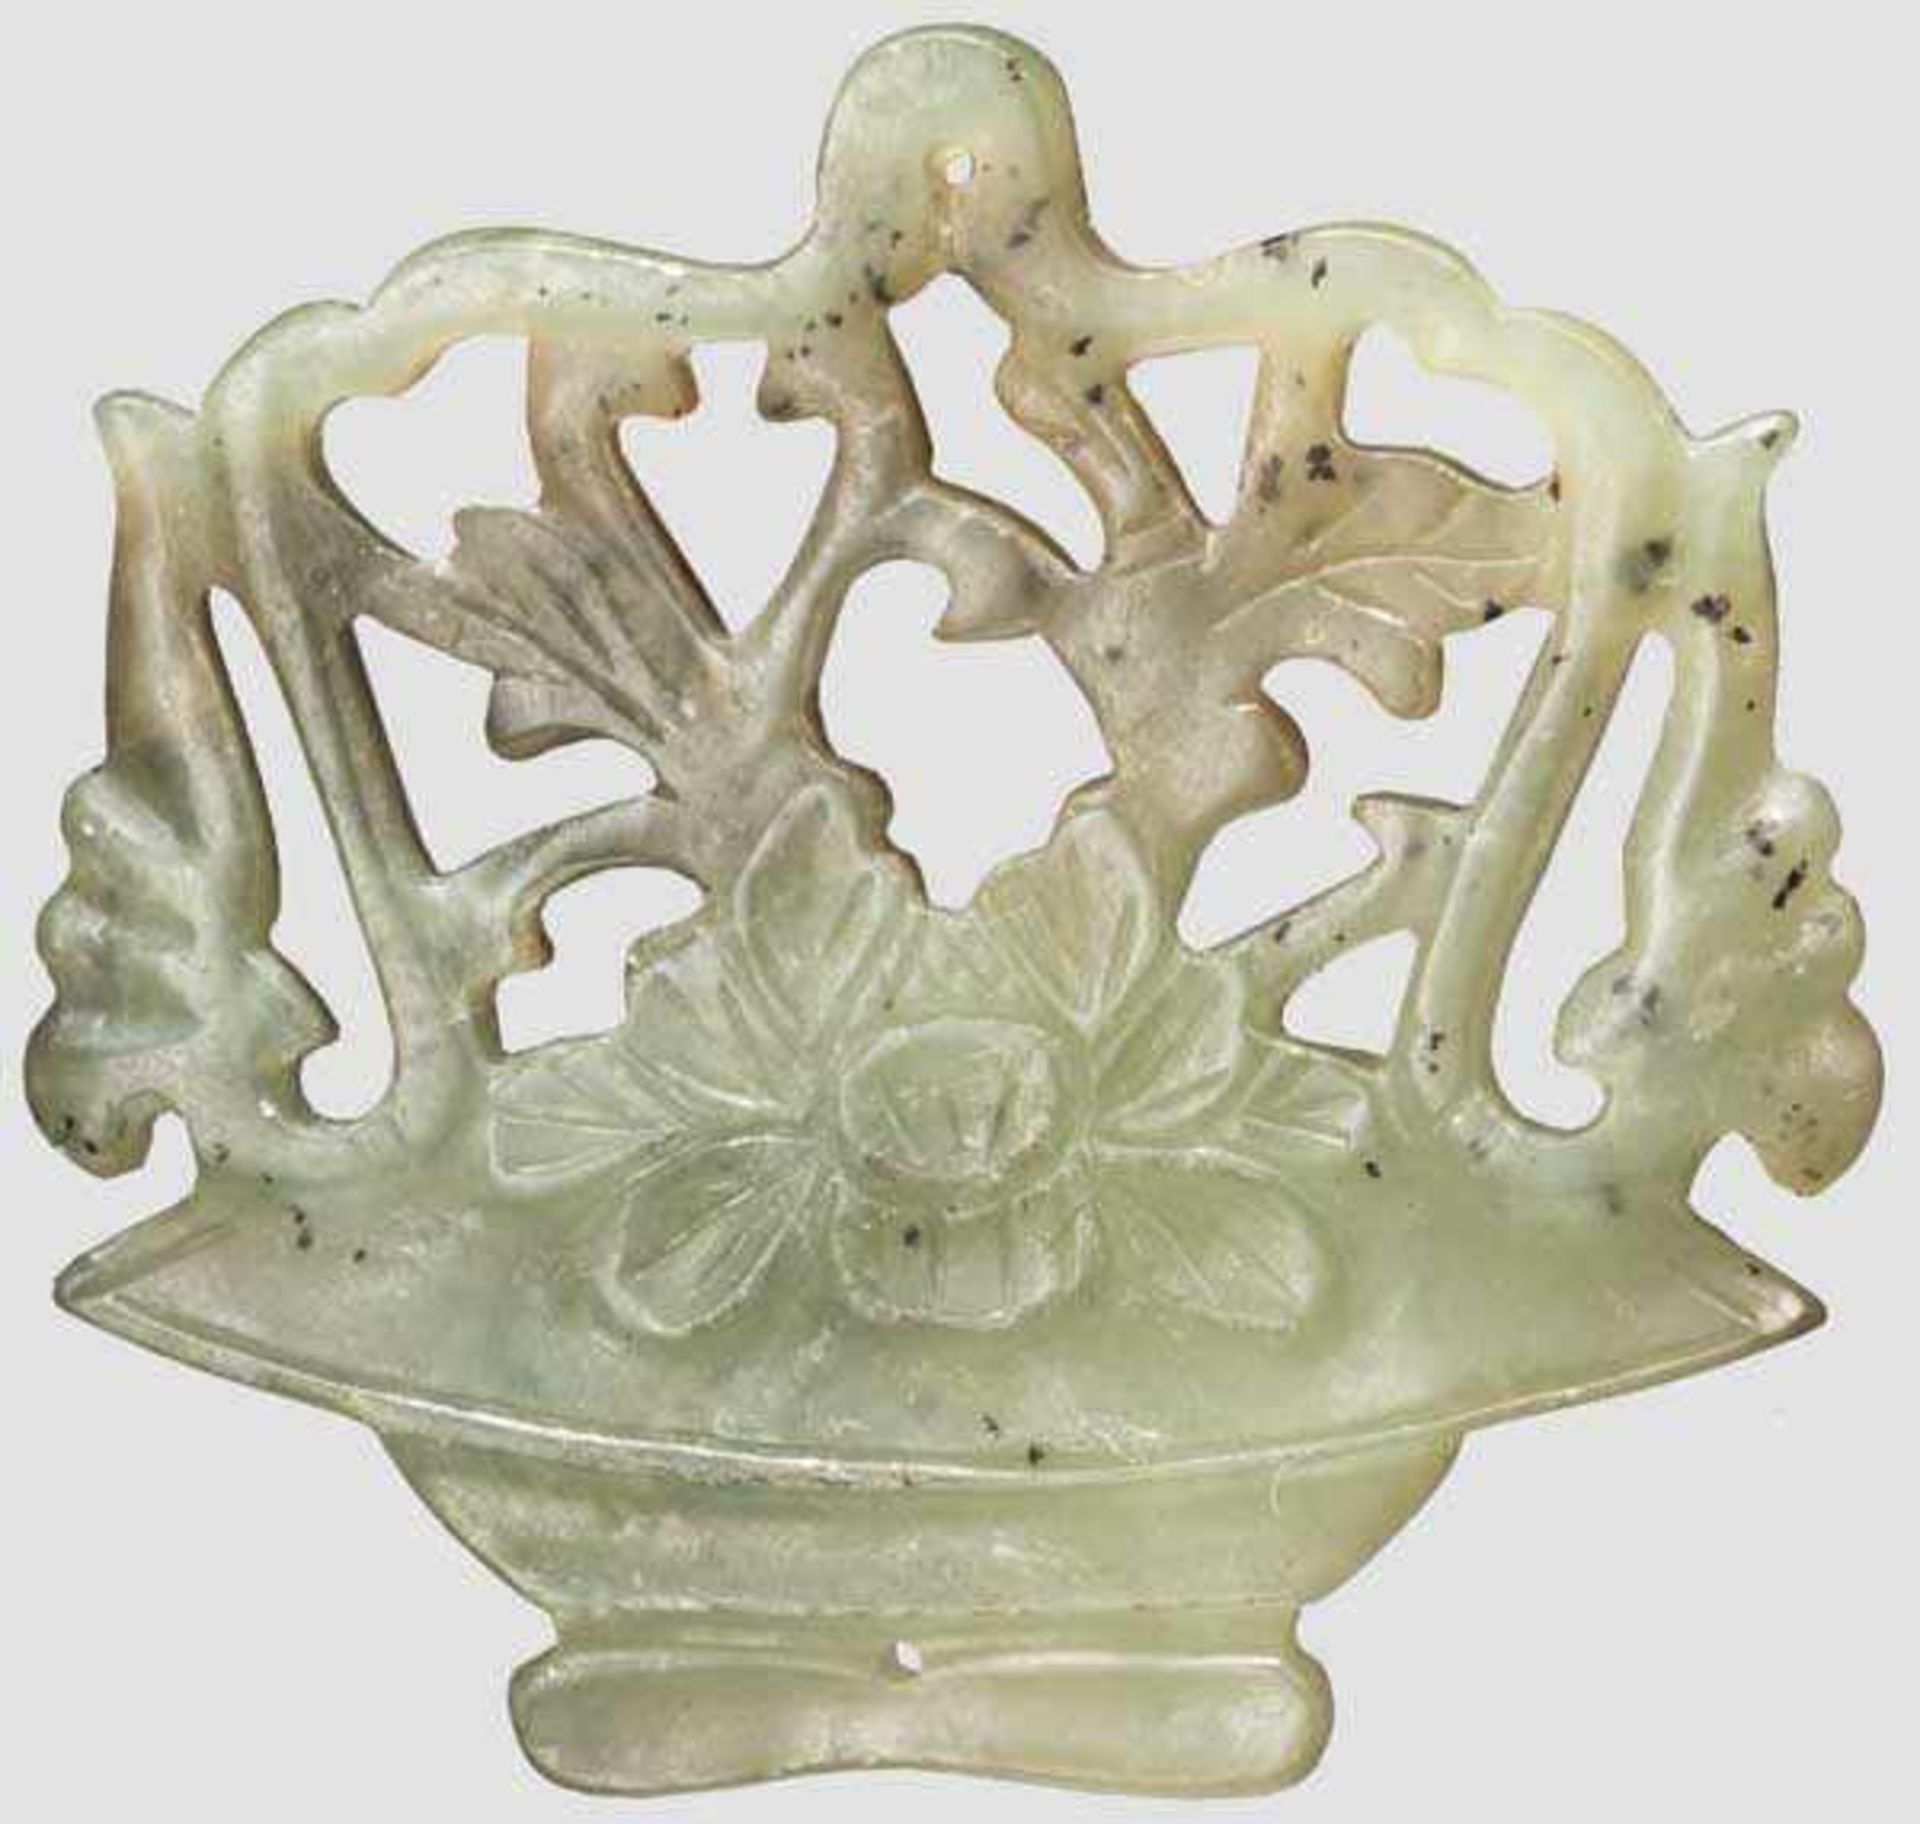 Blumenkorb aus Jade, China, 19. Jhdt. Darstellung eines Blumenkorbes aus grüner Jade mit